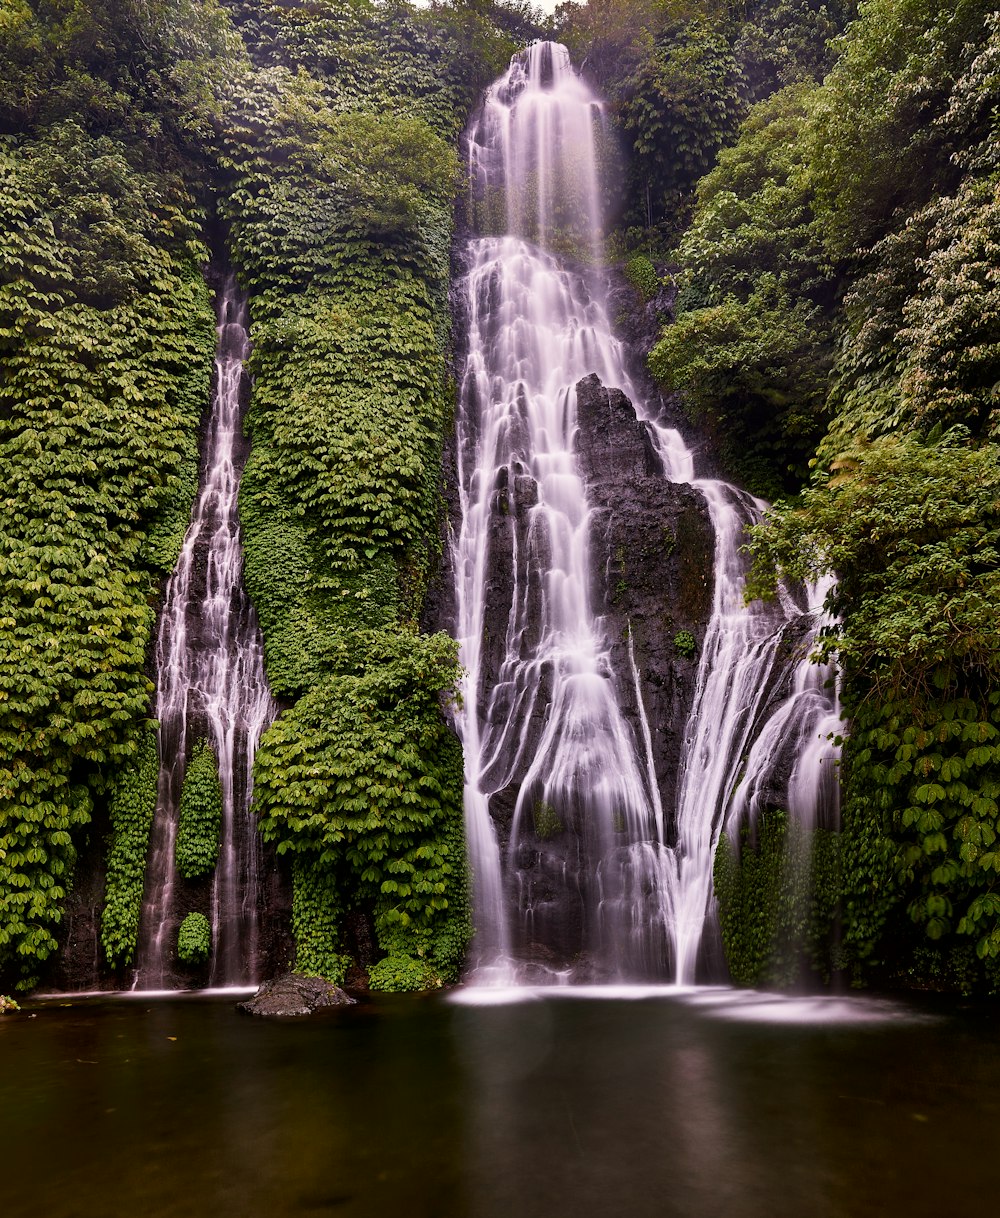 Una cascada en medio de un frondoso bosque verde